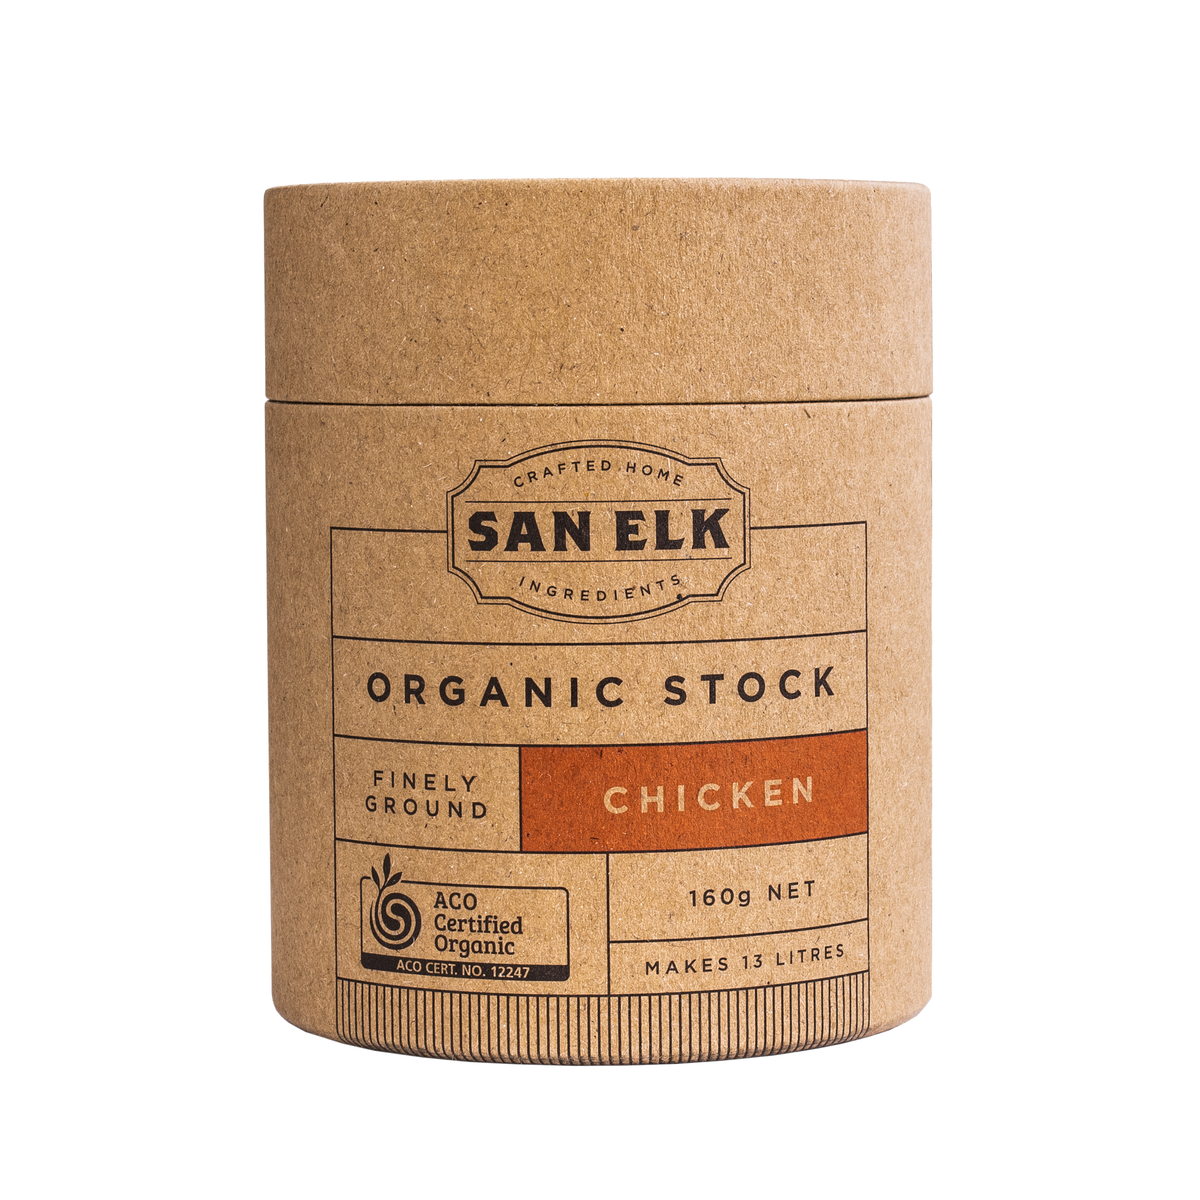 San Elk Certified Organic Chicken Stock